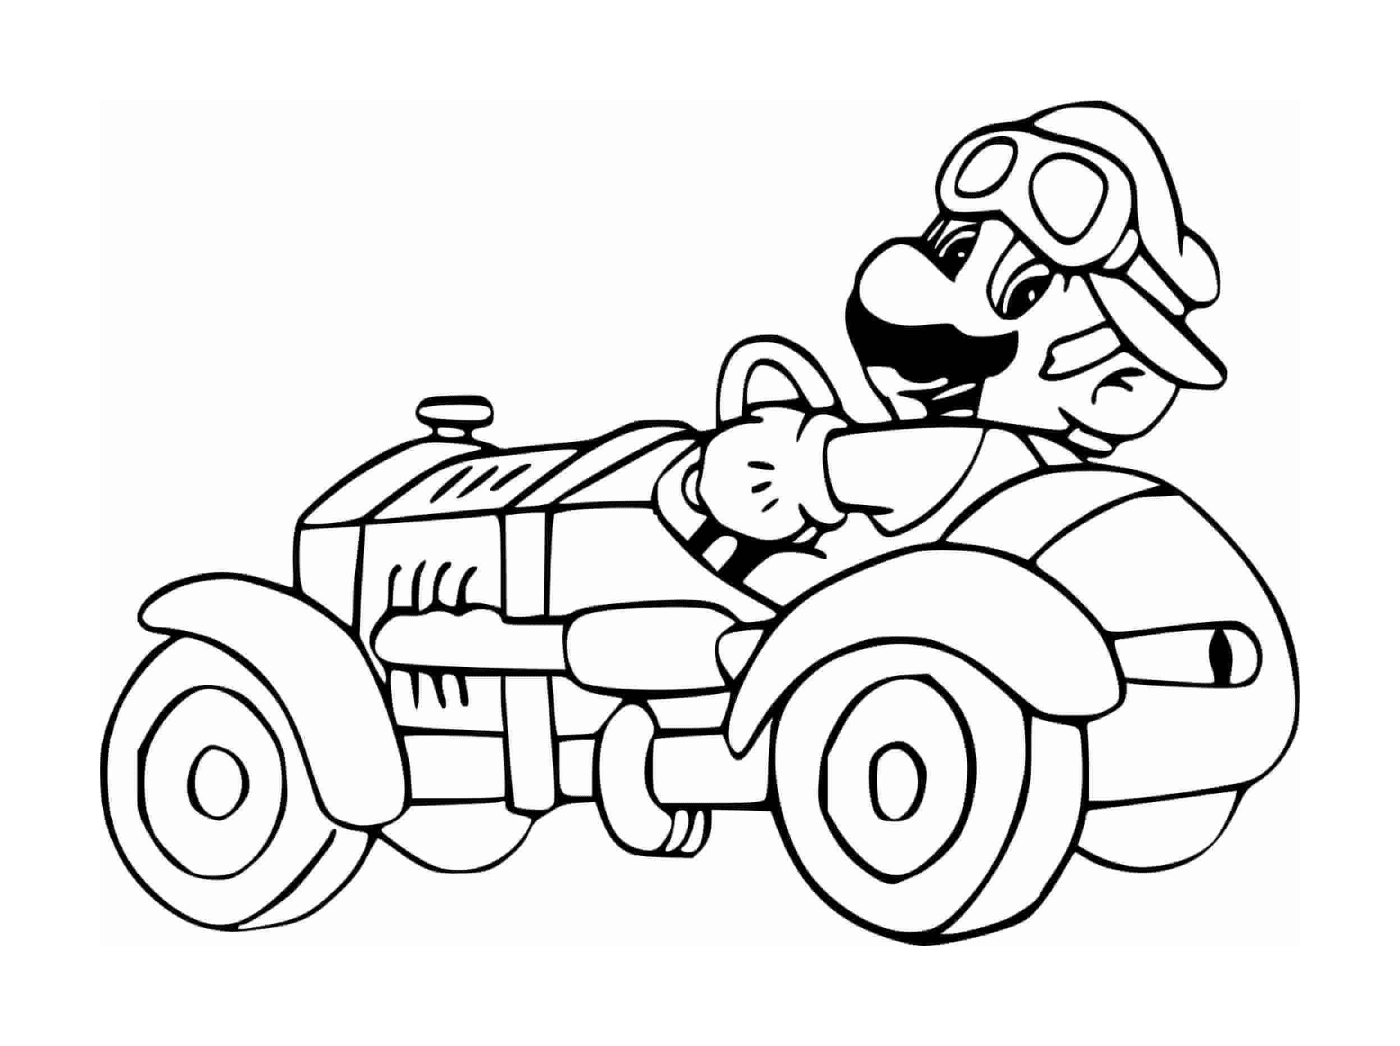  Mario dirigindo um carro 